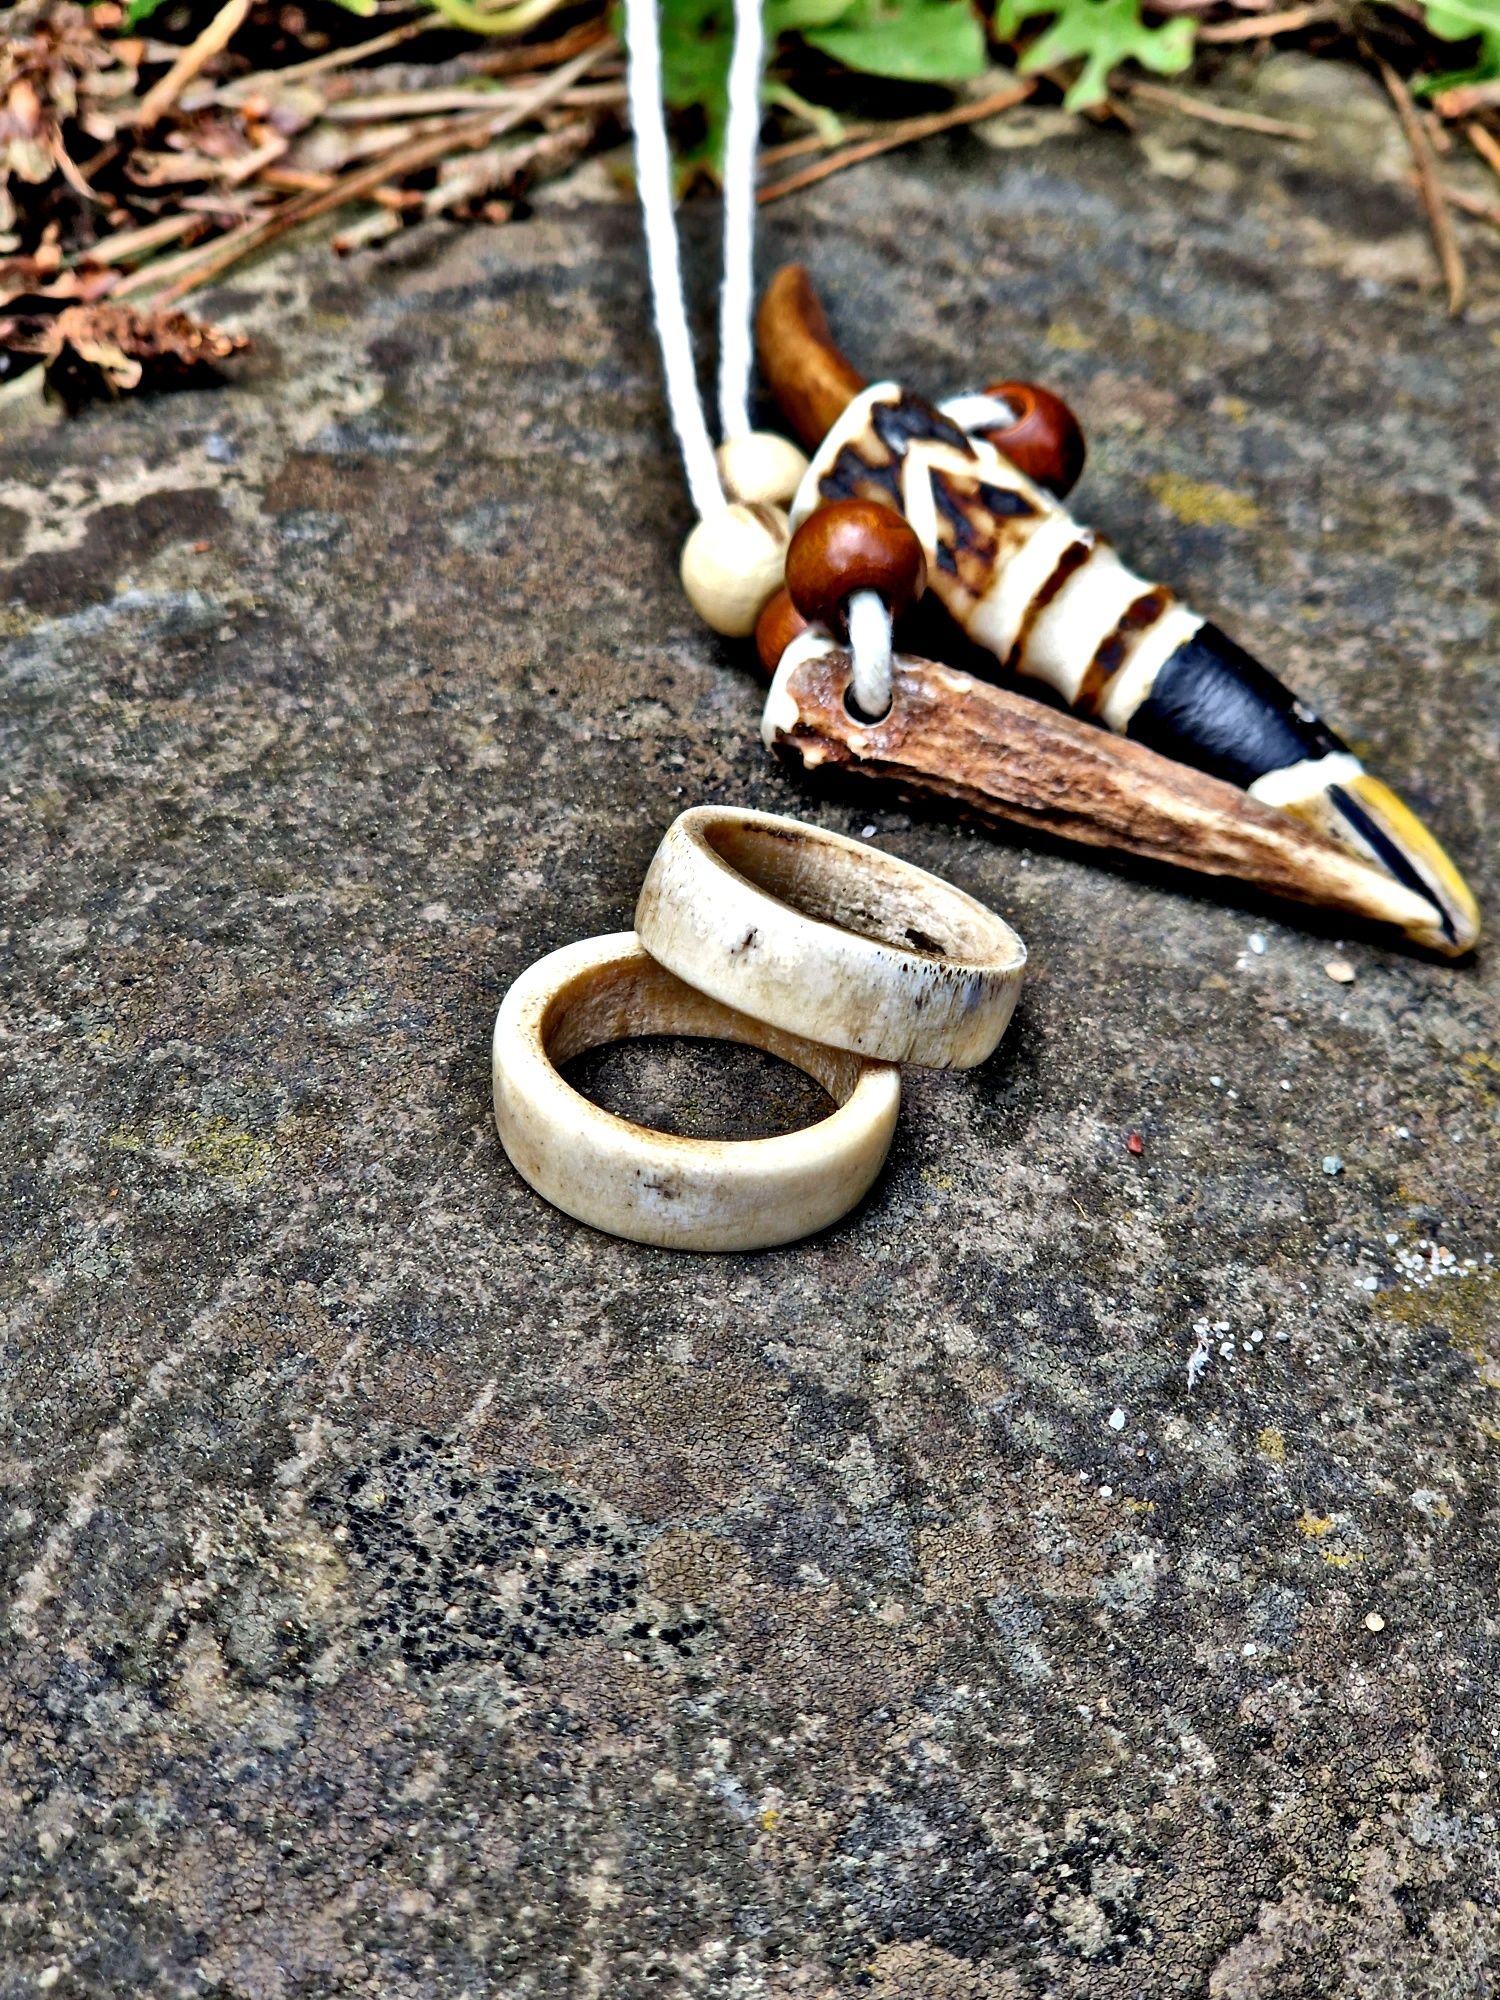 Sygnet, pierścionek, obrączka z poroża wykonana ręcznie